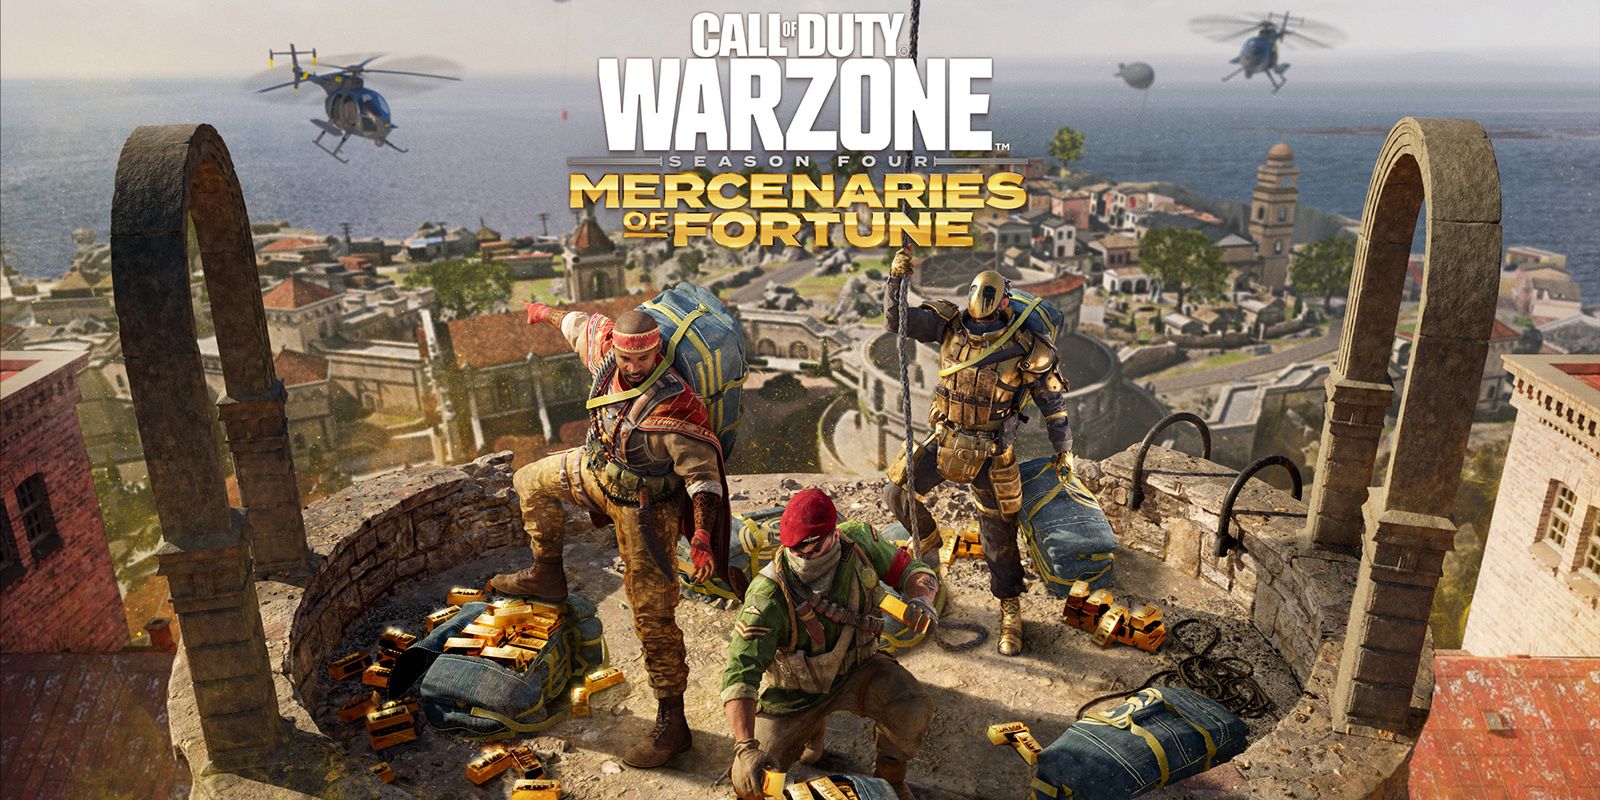 La temporada Mercenaries of Fortune de Call of Duty Warzone agrega un nuevo mapa